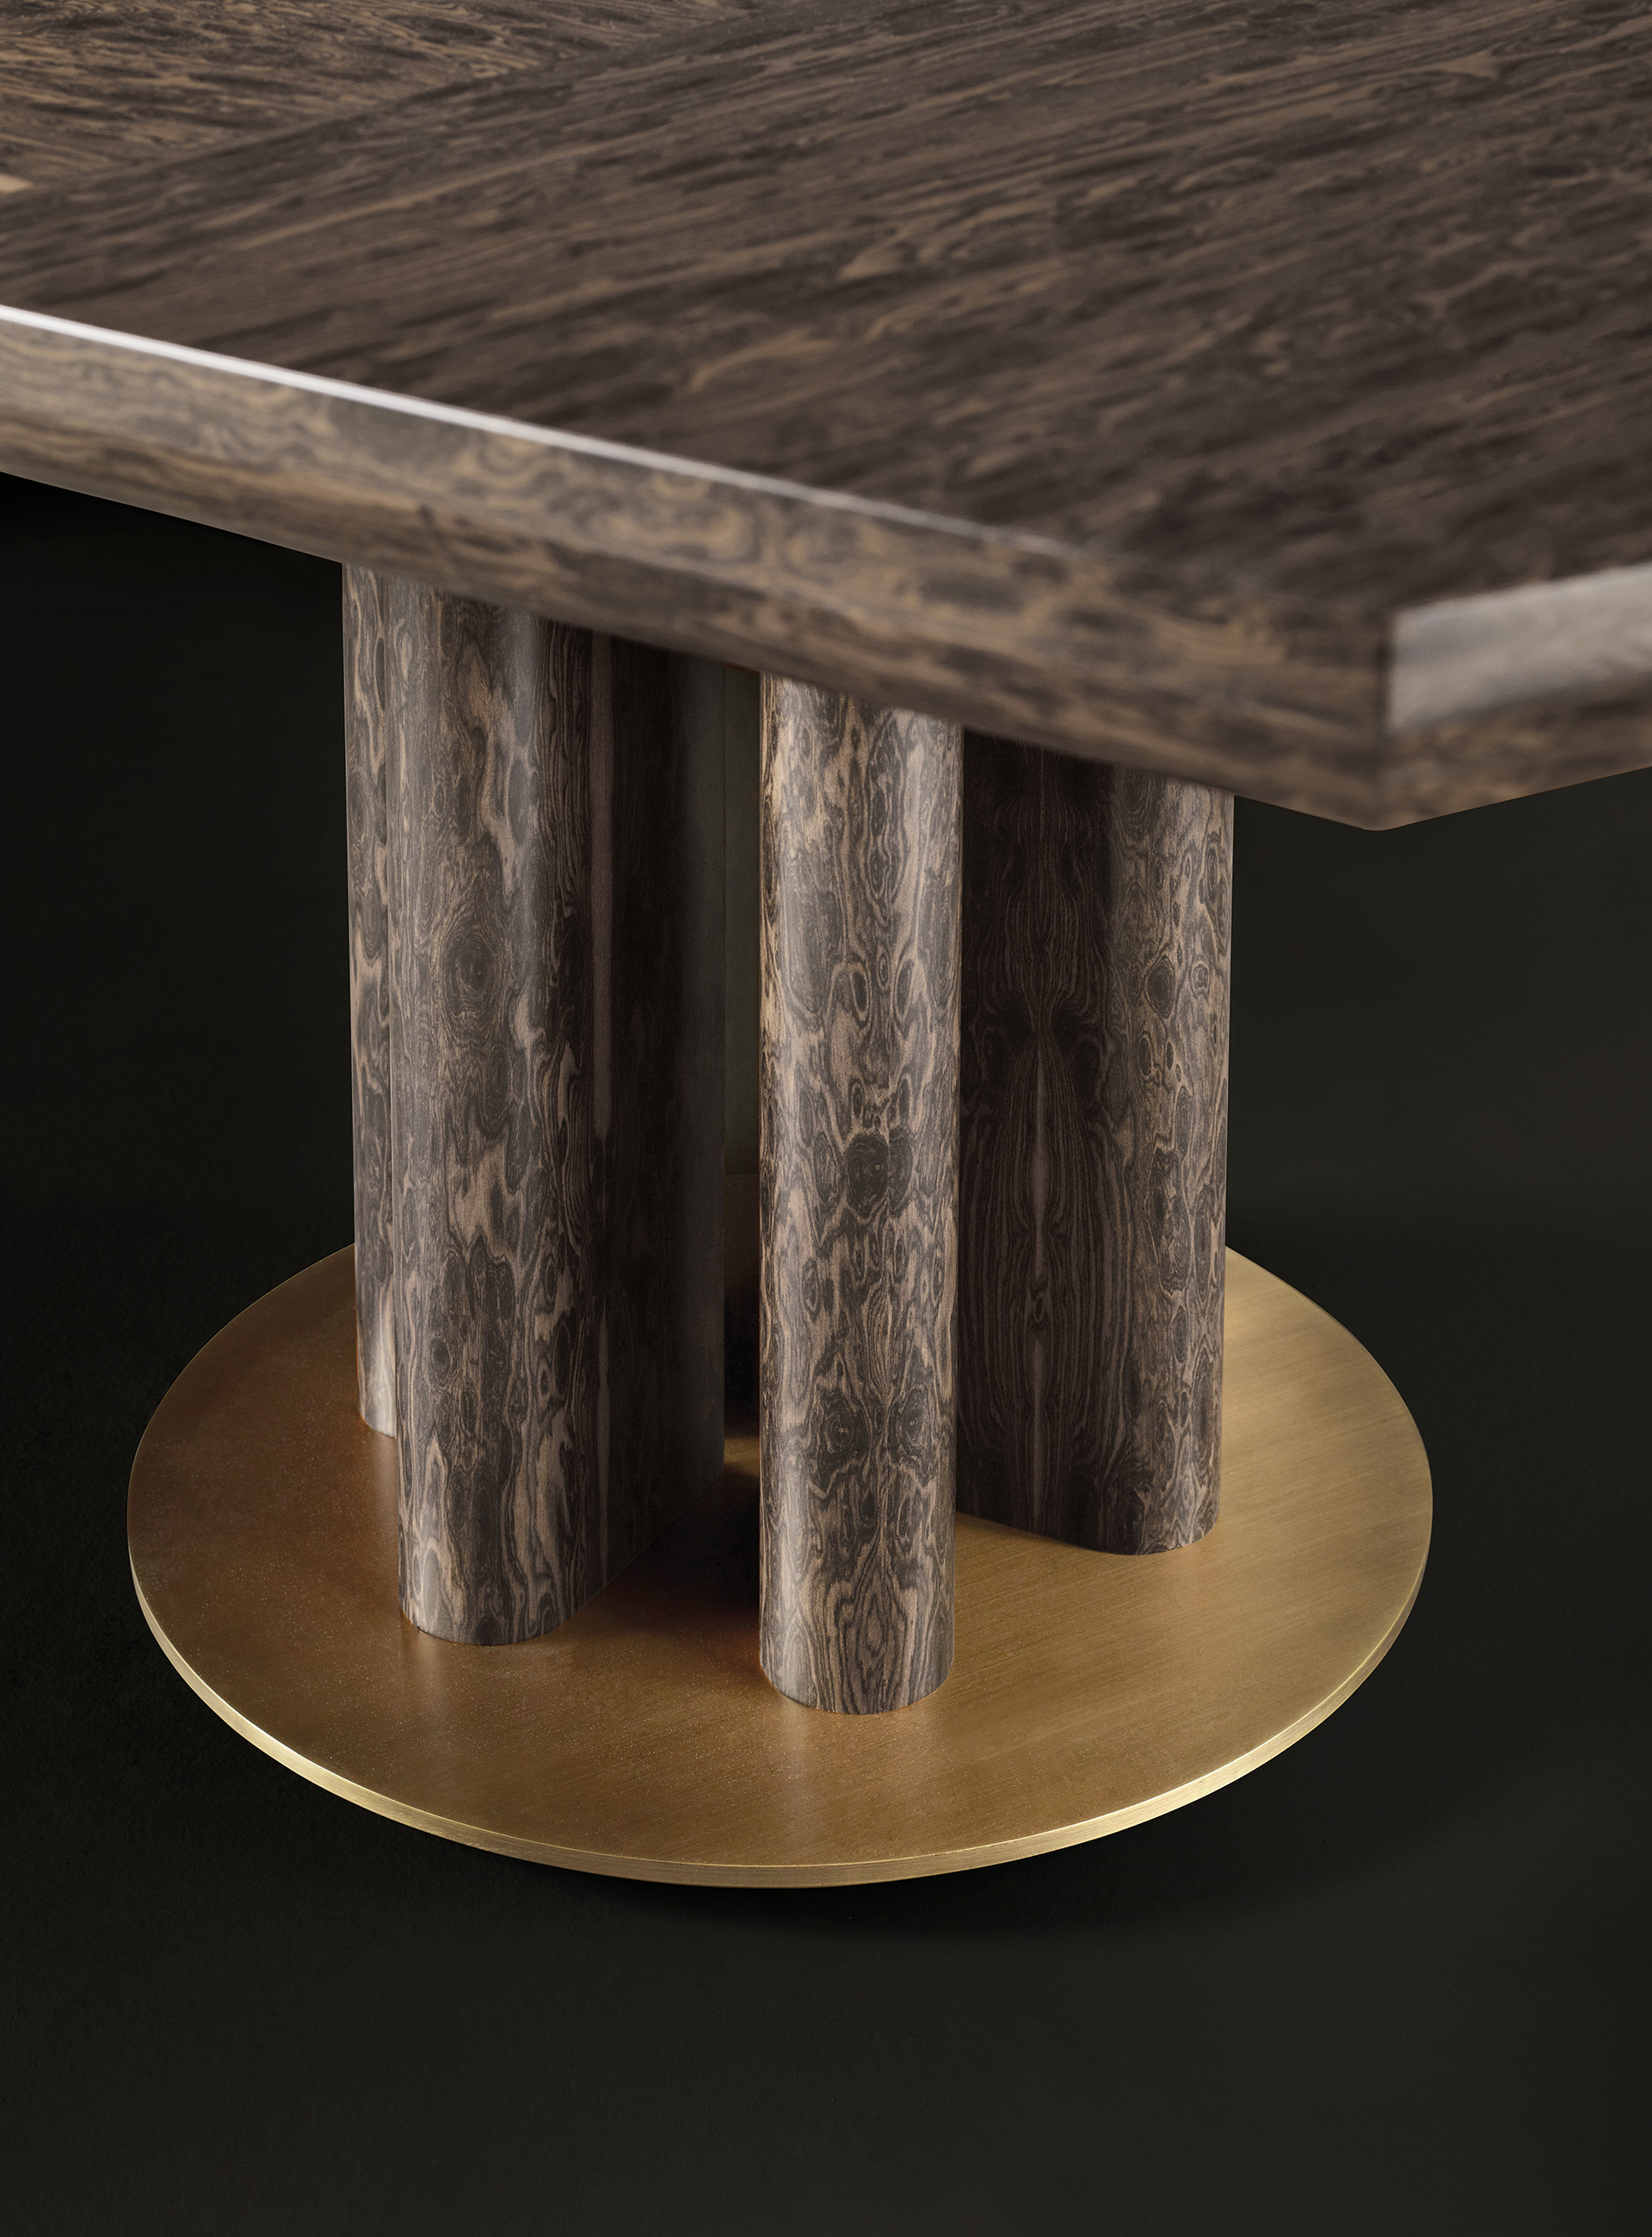 Dettaglio della gamba e base in bronzo di Orazio, tavolo da pranzo in legno e bronzo della collezione Amaranthine Tales di Promemoria | Promemoria